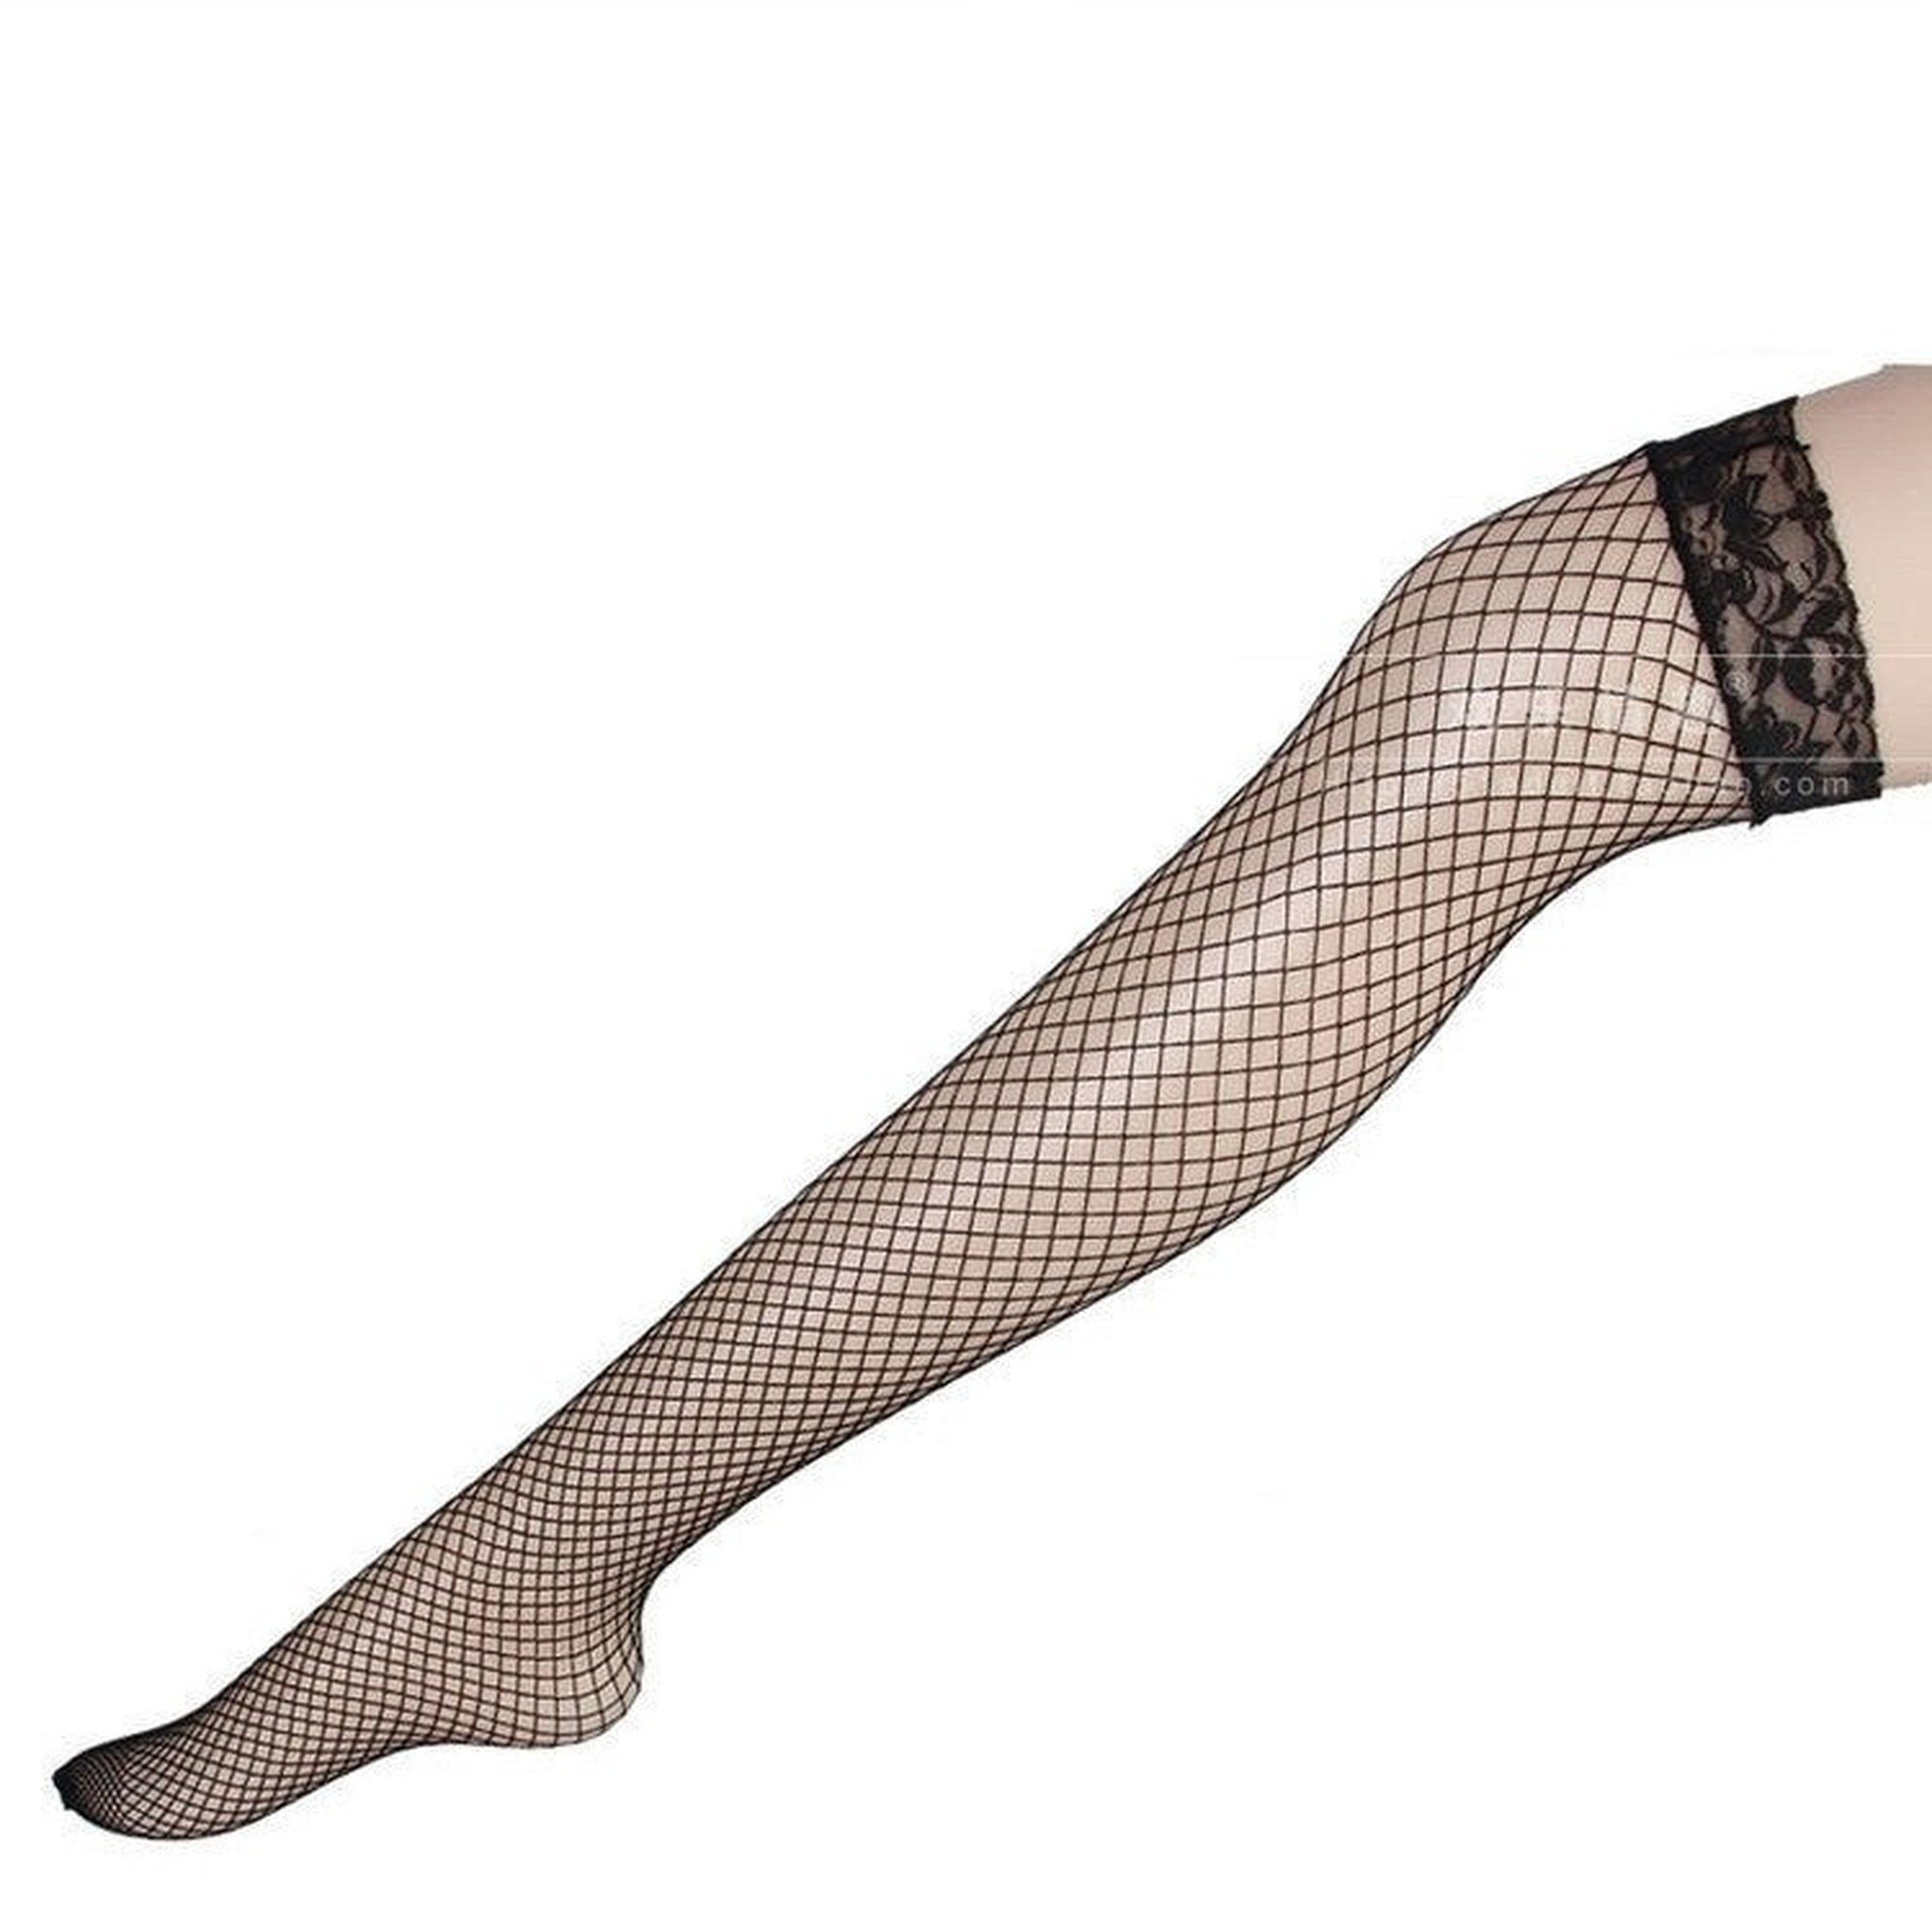 AUKUU Ouvert Strumpfhose Damenmode Sexy Netzstrumpfhose mit Spitzenborte, halblange Socken, über das Knie, Zweiteiliges Set, Einheitsgröße